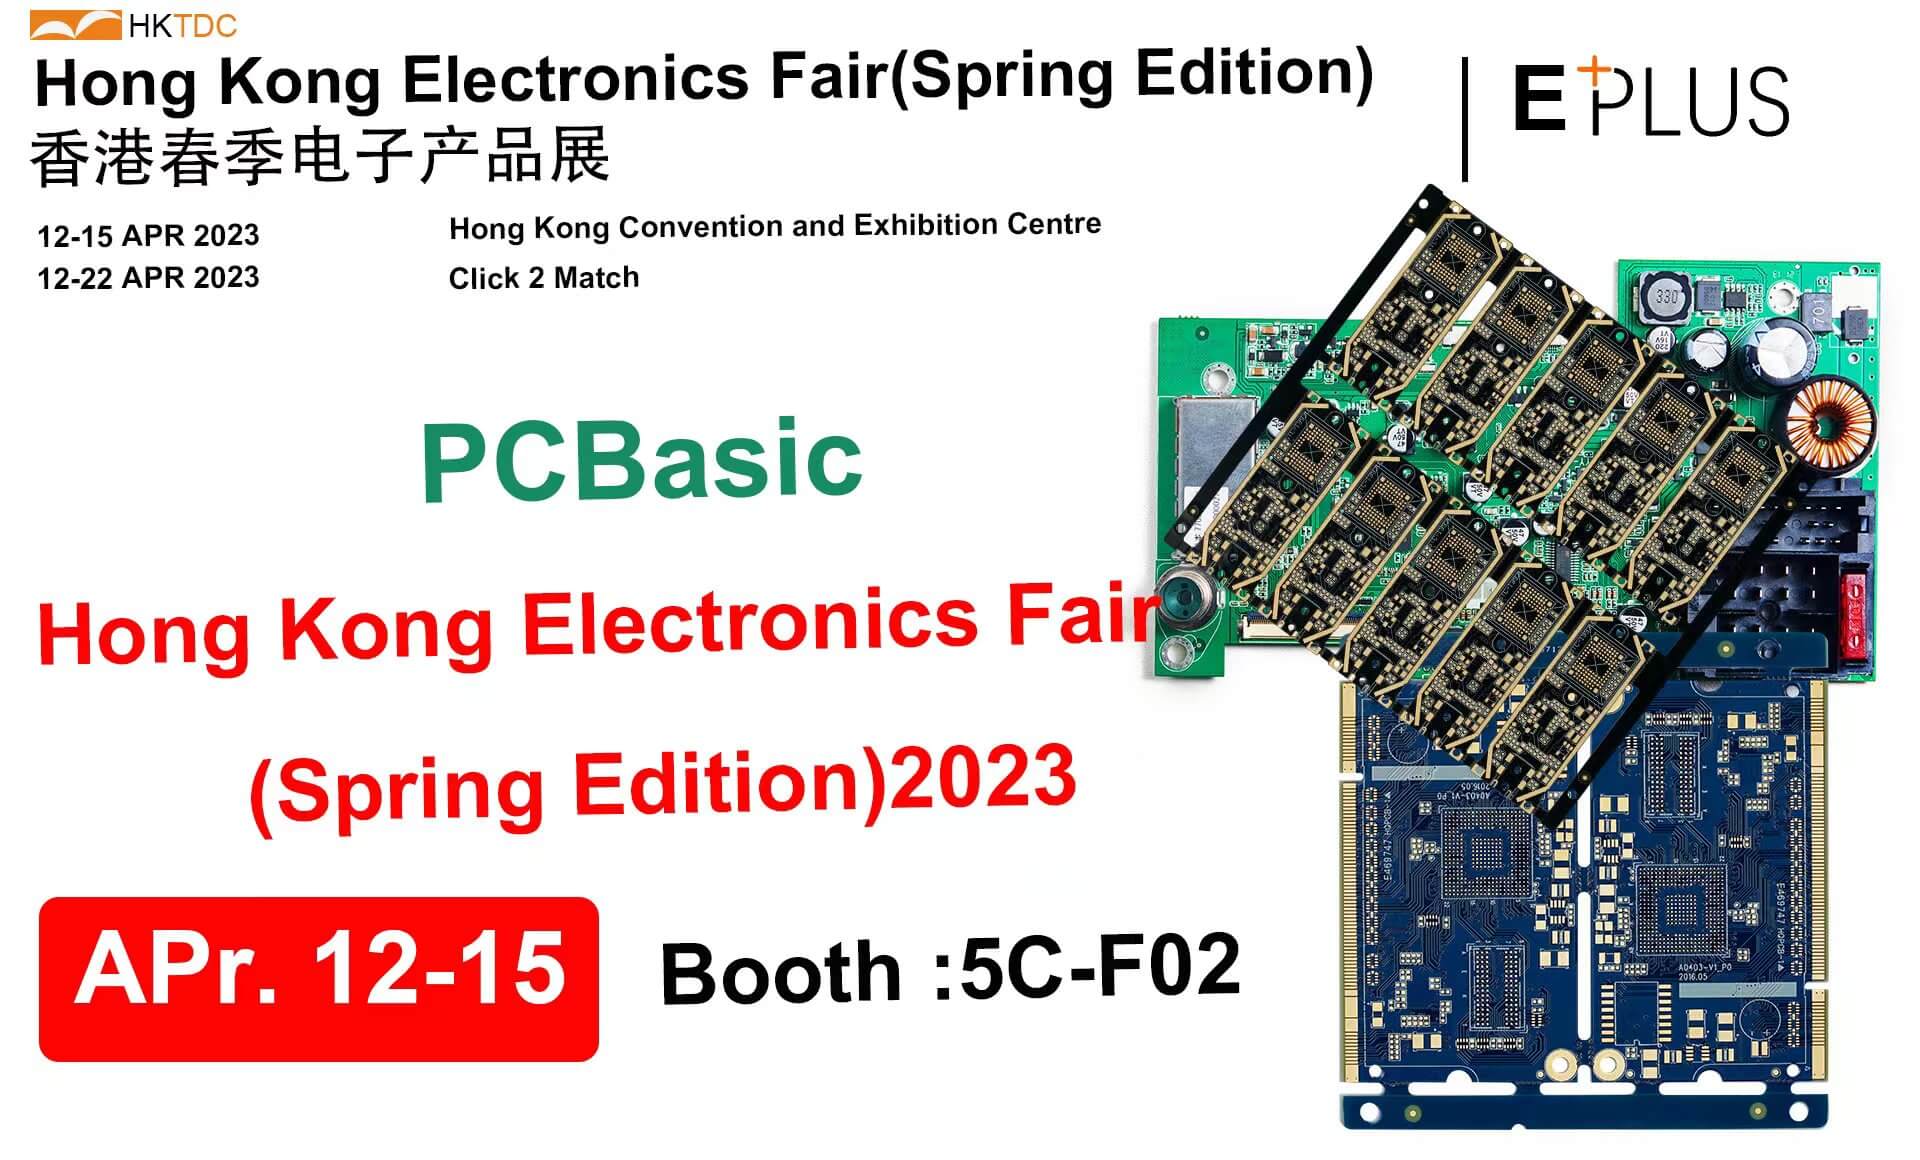 PCBasic at HKTDC Hong Kong Electronics Fair